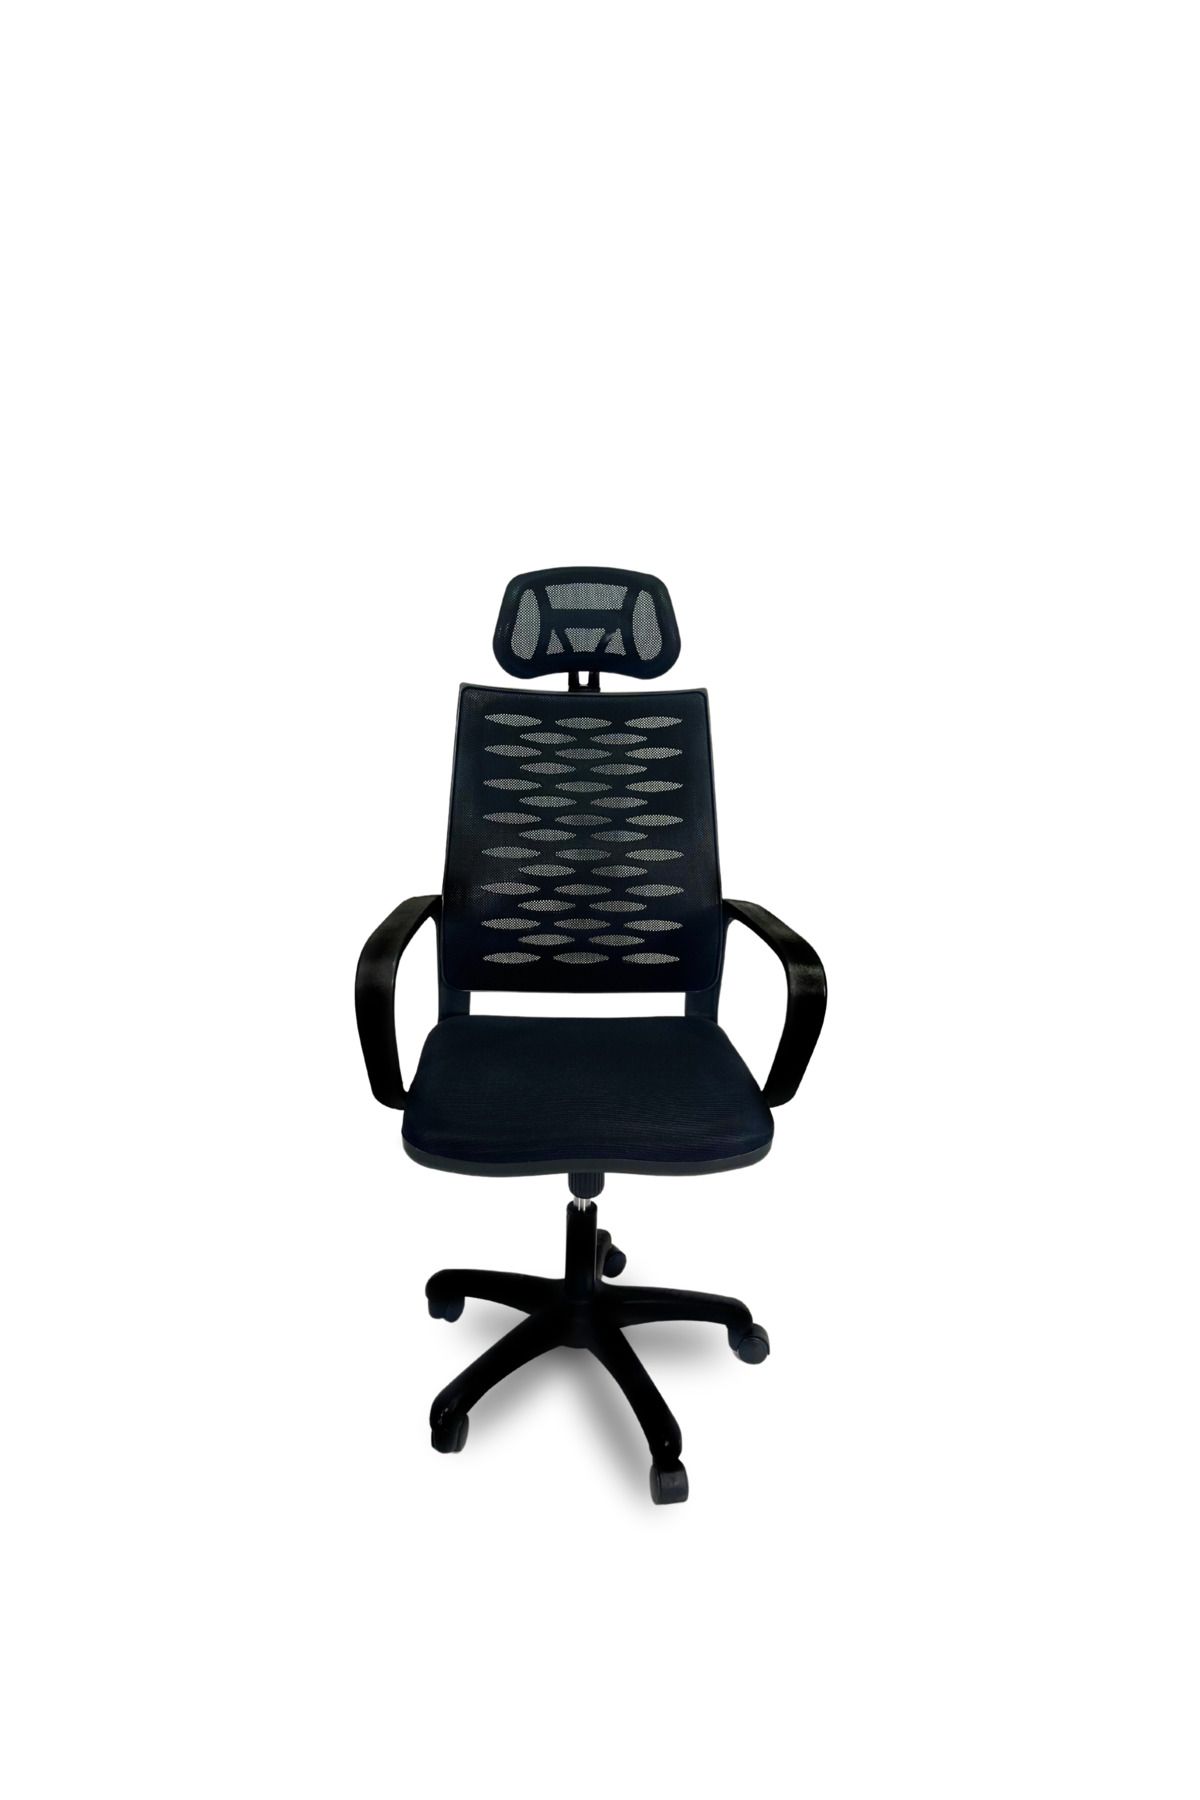 BİLGİ BÜRO MOBİLYALARI Ofis Sandalyesi Fileli Yönetici Müdür Koltuğu Döner Sandalye Fileli Sandalye Fileli Siyah